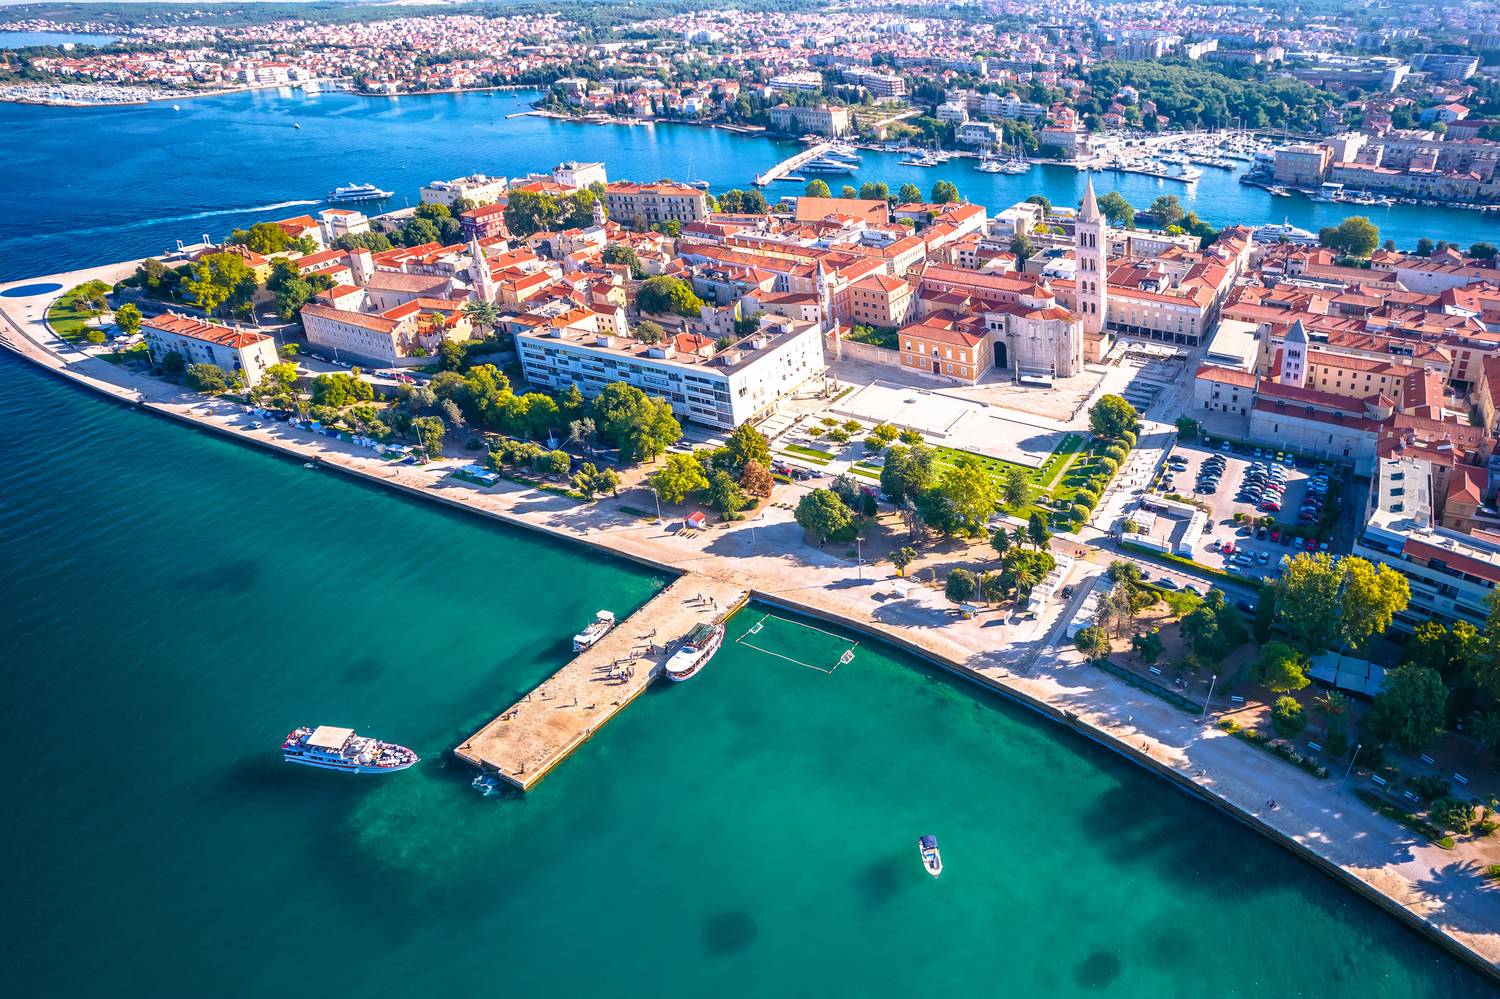 A horvátországi Zadar kedvelt úti cél az Adriai-tenger partján. A dalmát gyöngyszem félszigetre épült történelmi óvárosa, strandjai, mediterrán hangulata mind-mind lenyűgözi a turistákat. A Skyscanner szerint most még 10-15 ezer forintos jegyeket is találhattok ide akár nyárra is.